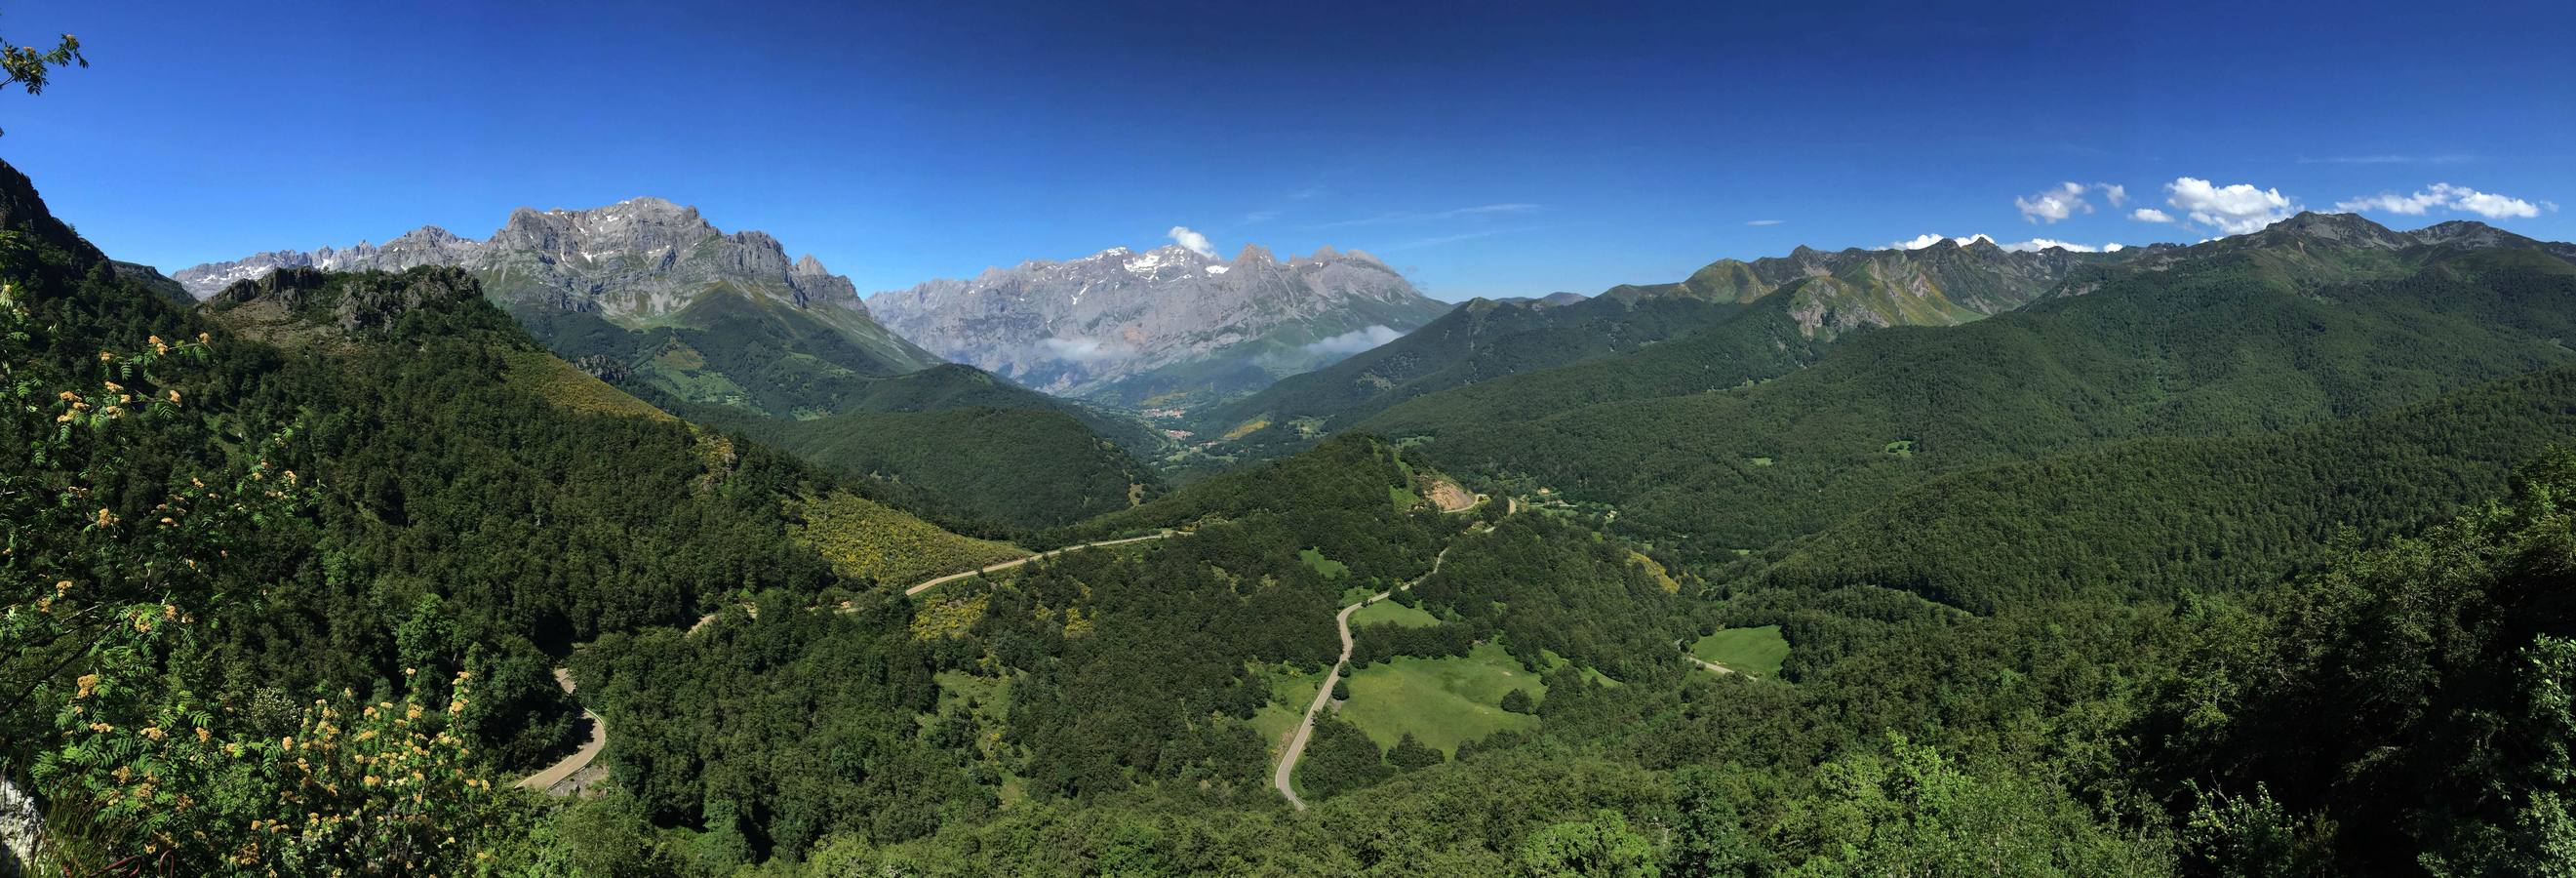 Valle de Valdeón en los Picos de Europa desde el mirador de Piedrashitas.